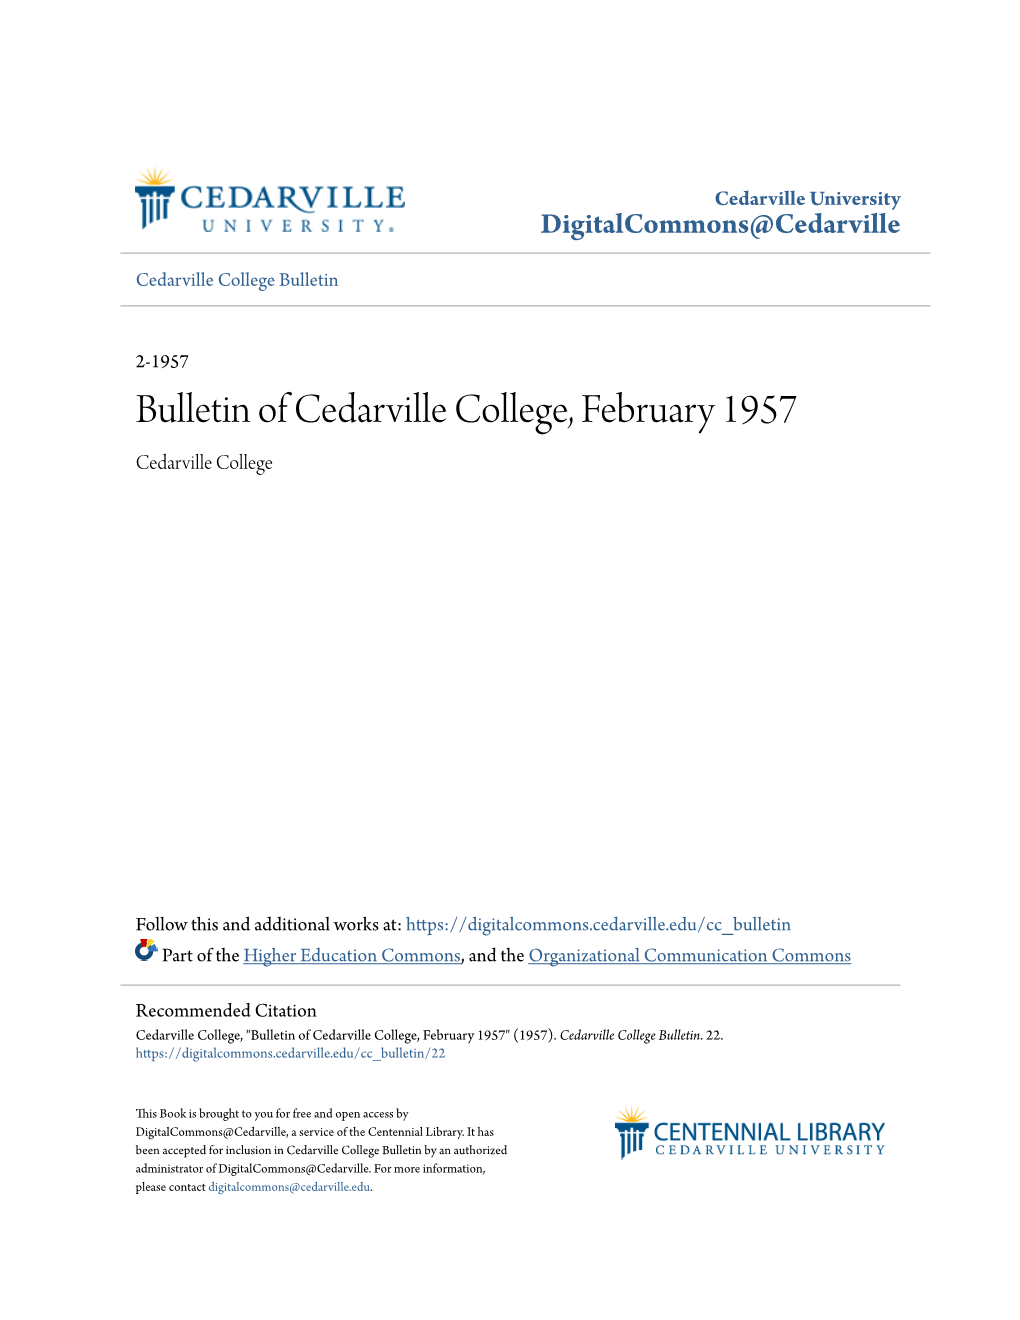 Bulletin of Cedarville College, February 1957 Cedarville College